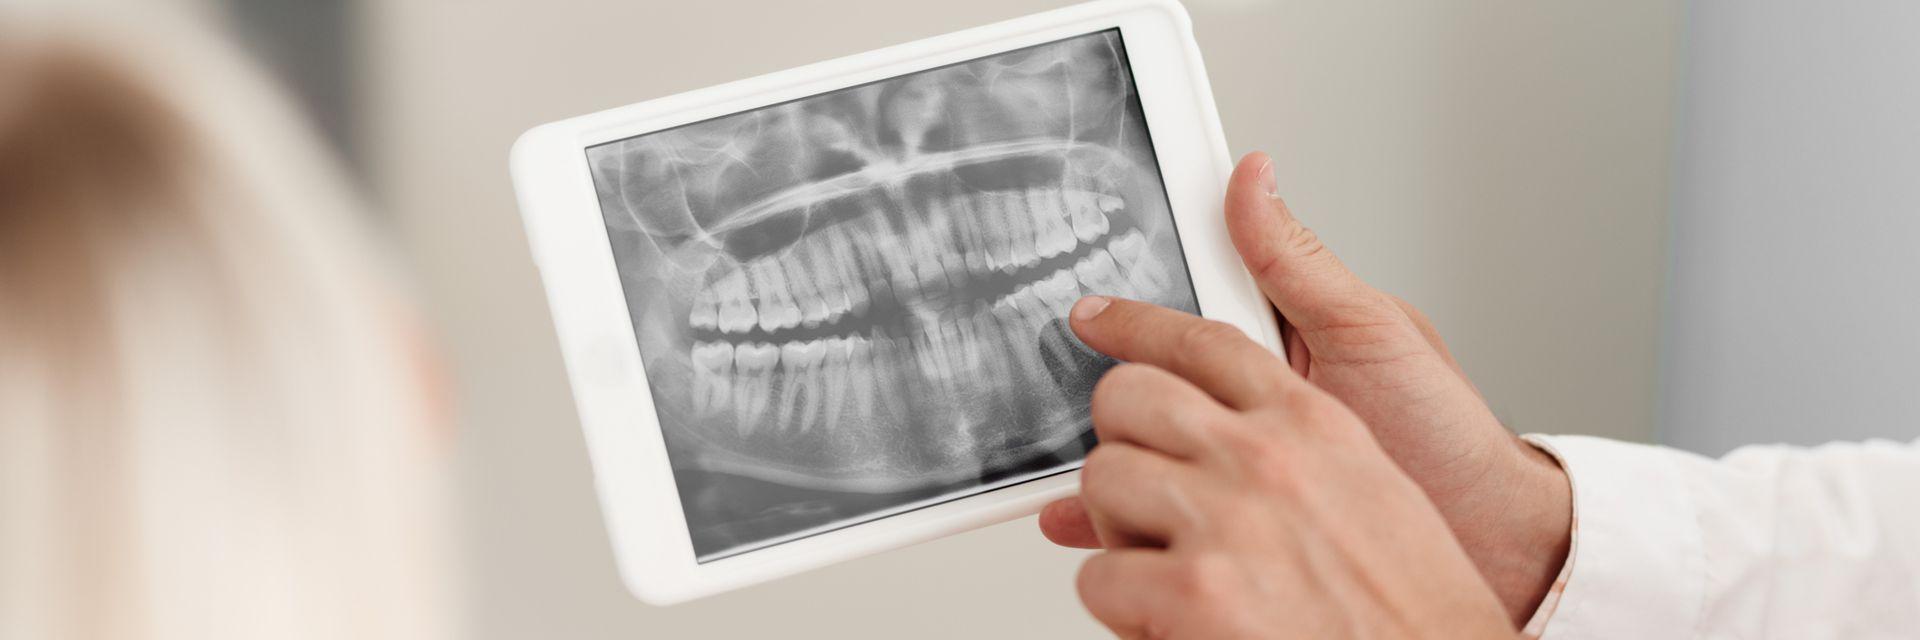 Unsere internetfähigen Zahnarzt iPad mit zusammengestellten Fachbeiträgen werden Ihnen bei längeren Wartezeiten, zur Verfügung gestellt